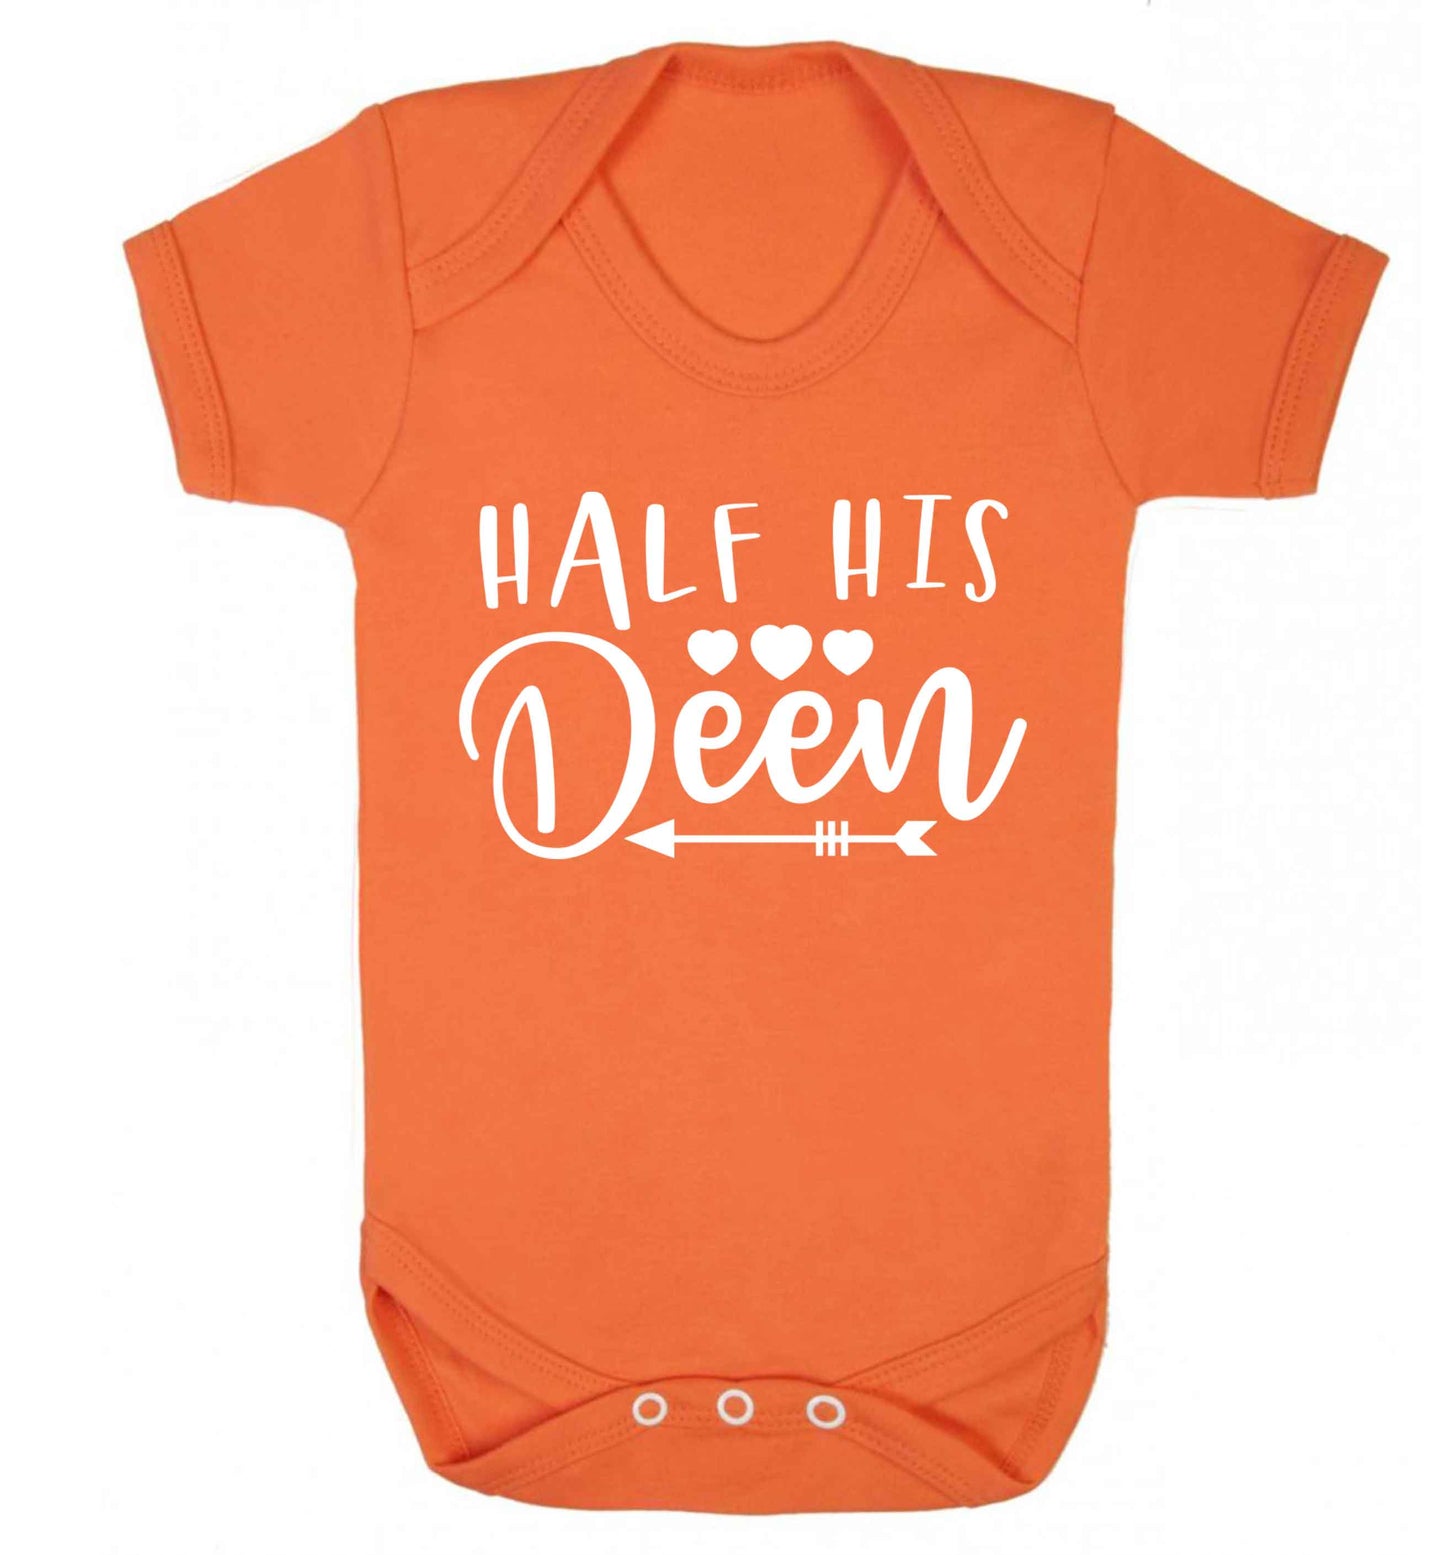 Half his deen Baby Vest orange 18-24 months